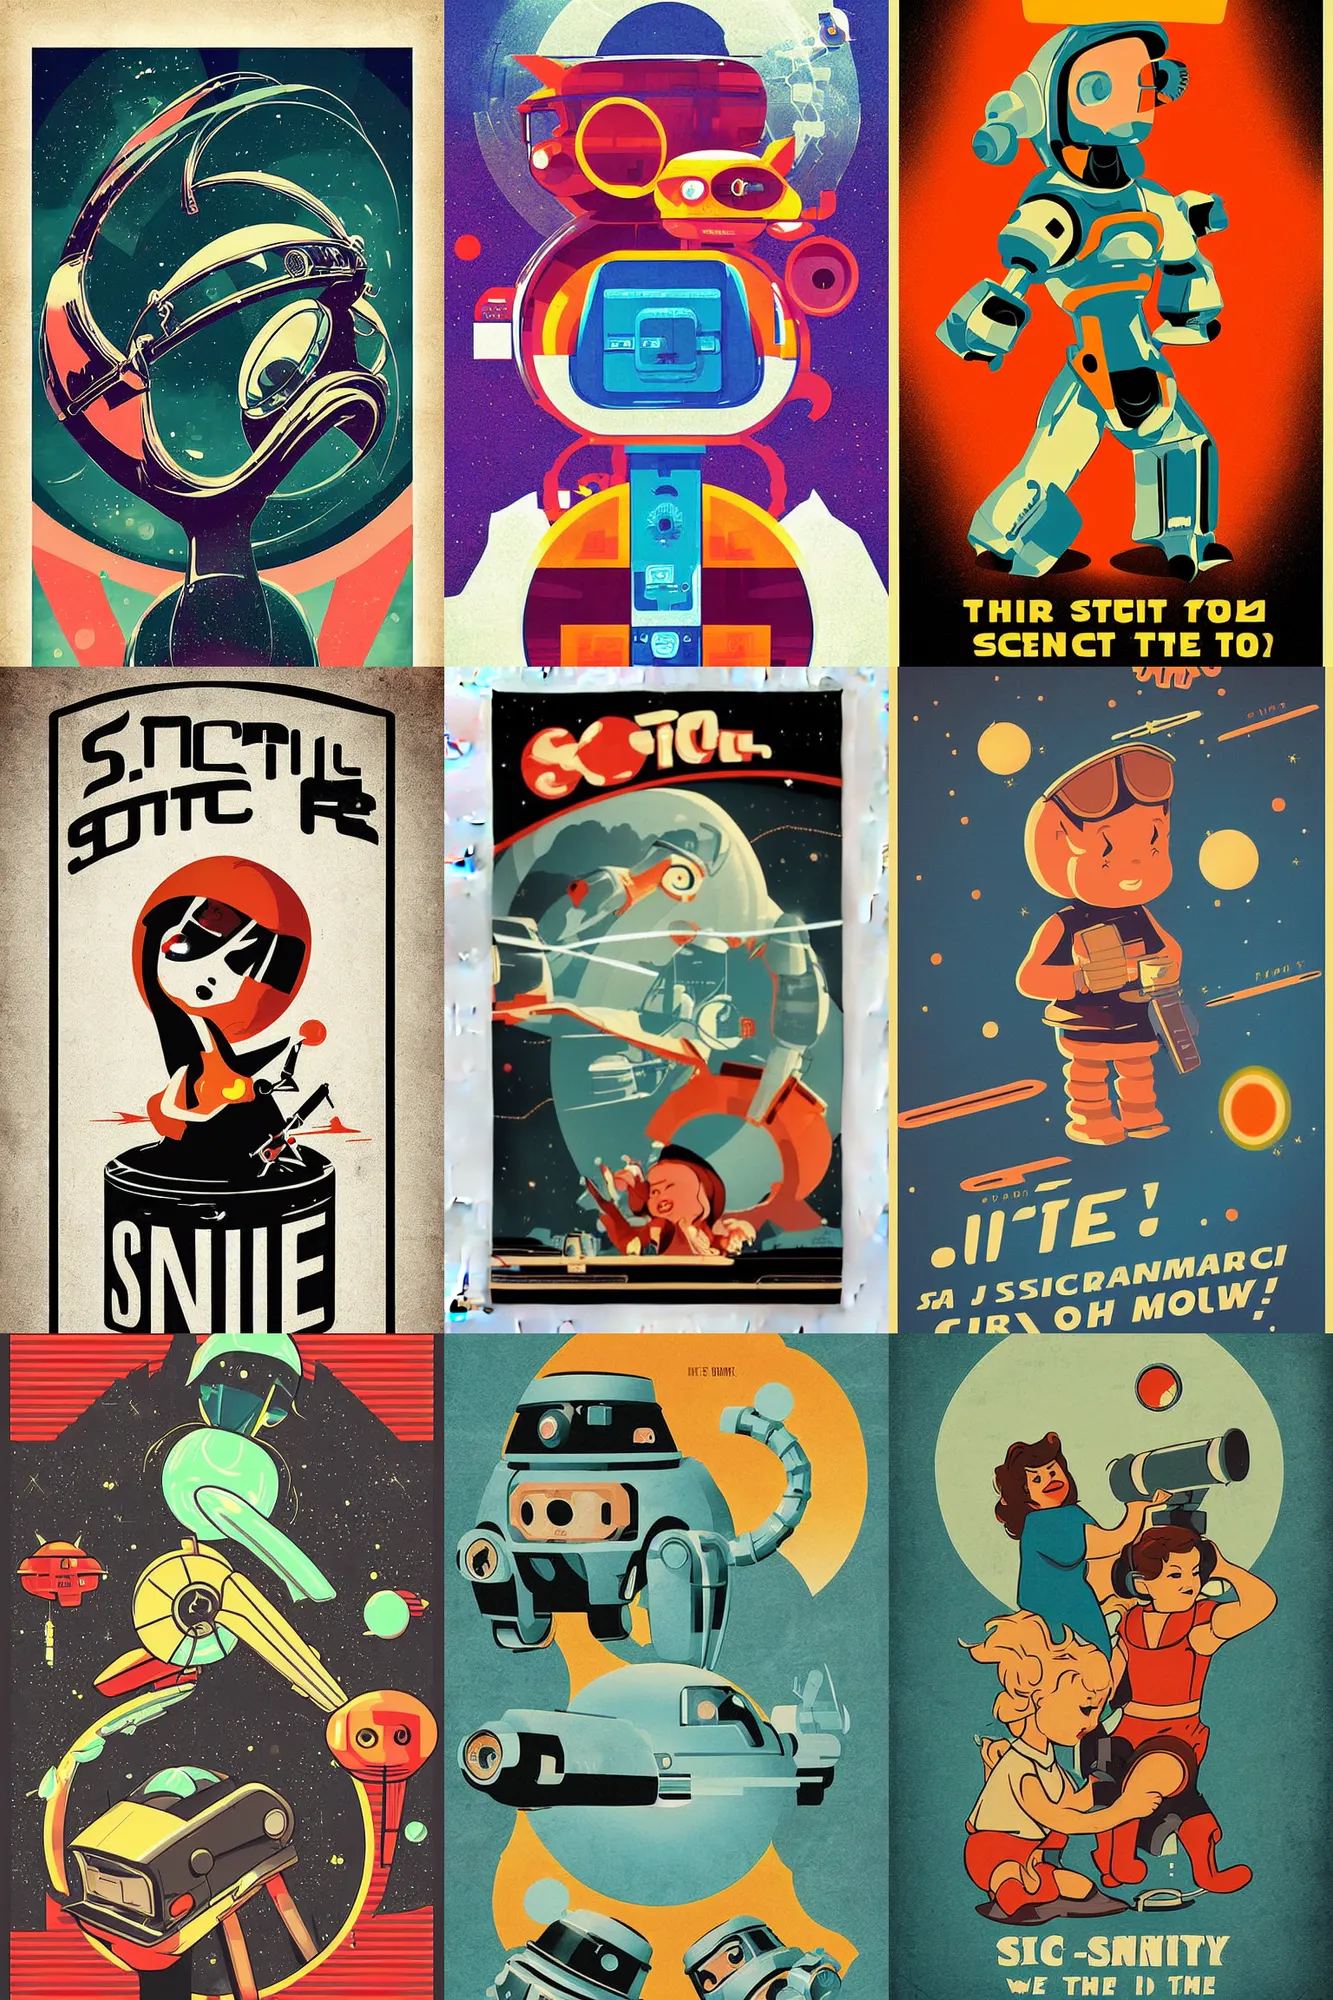 Prompt: cute retro sci - fi poster, digital art